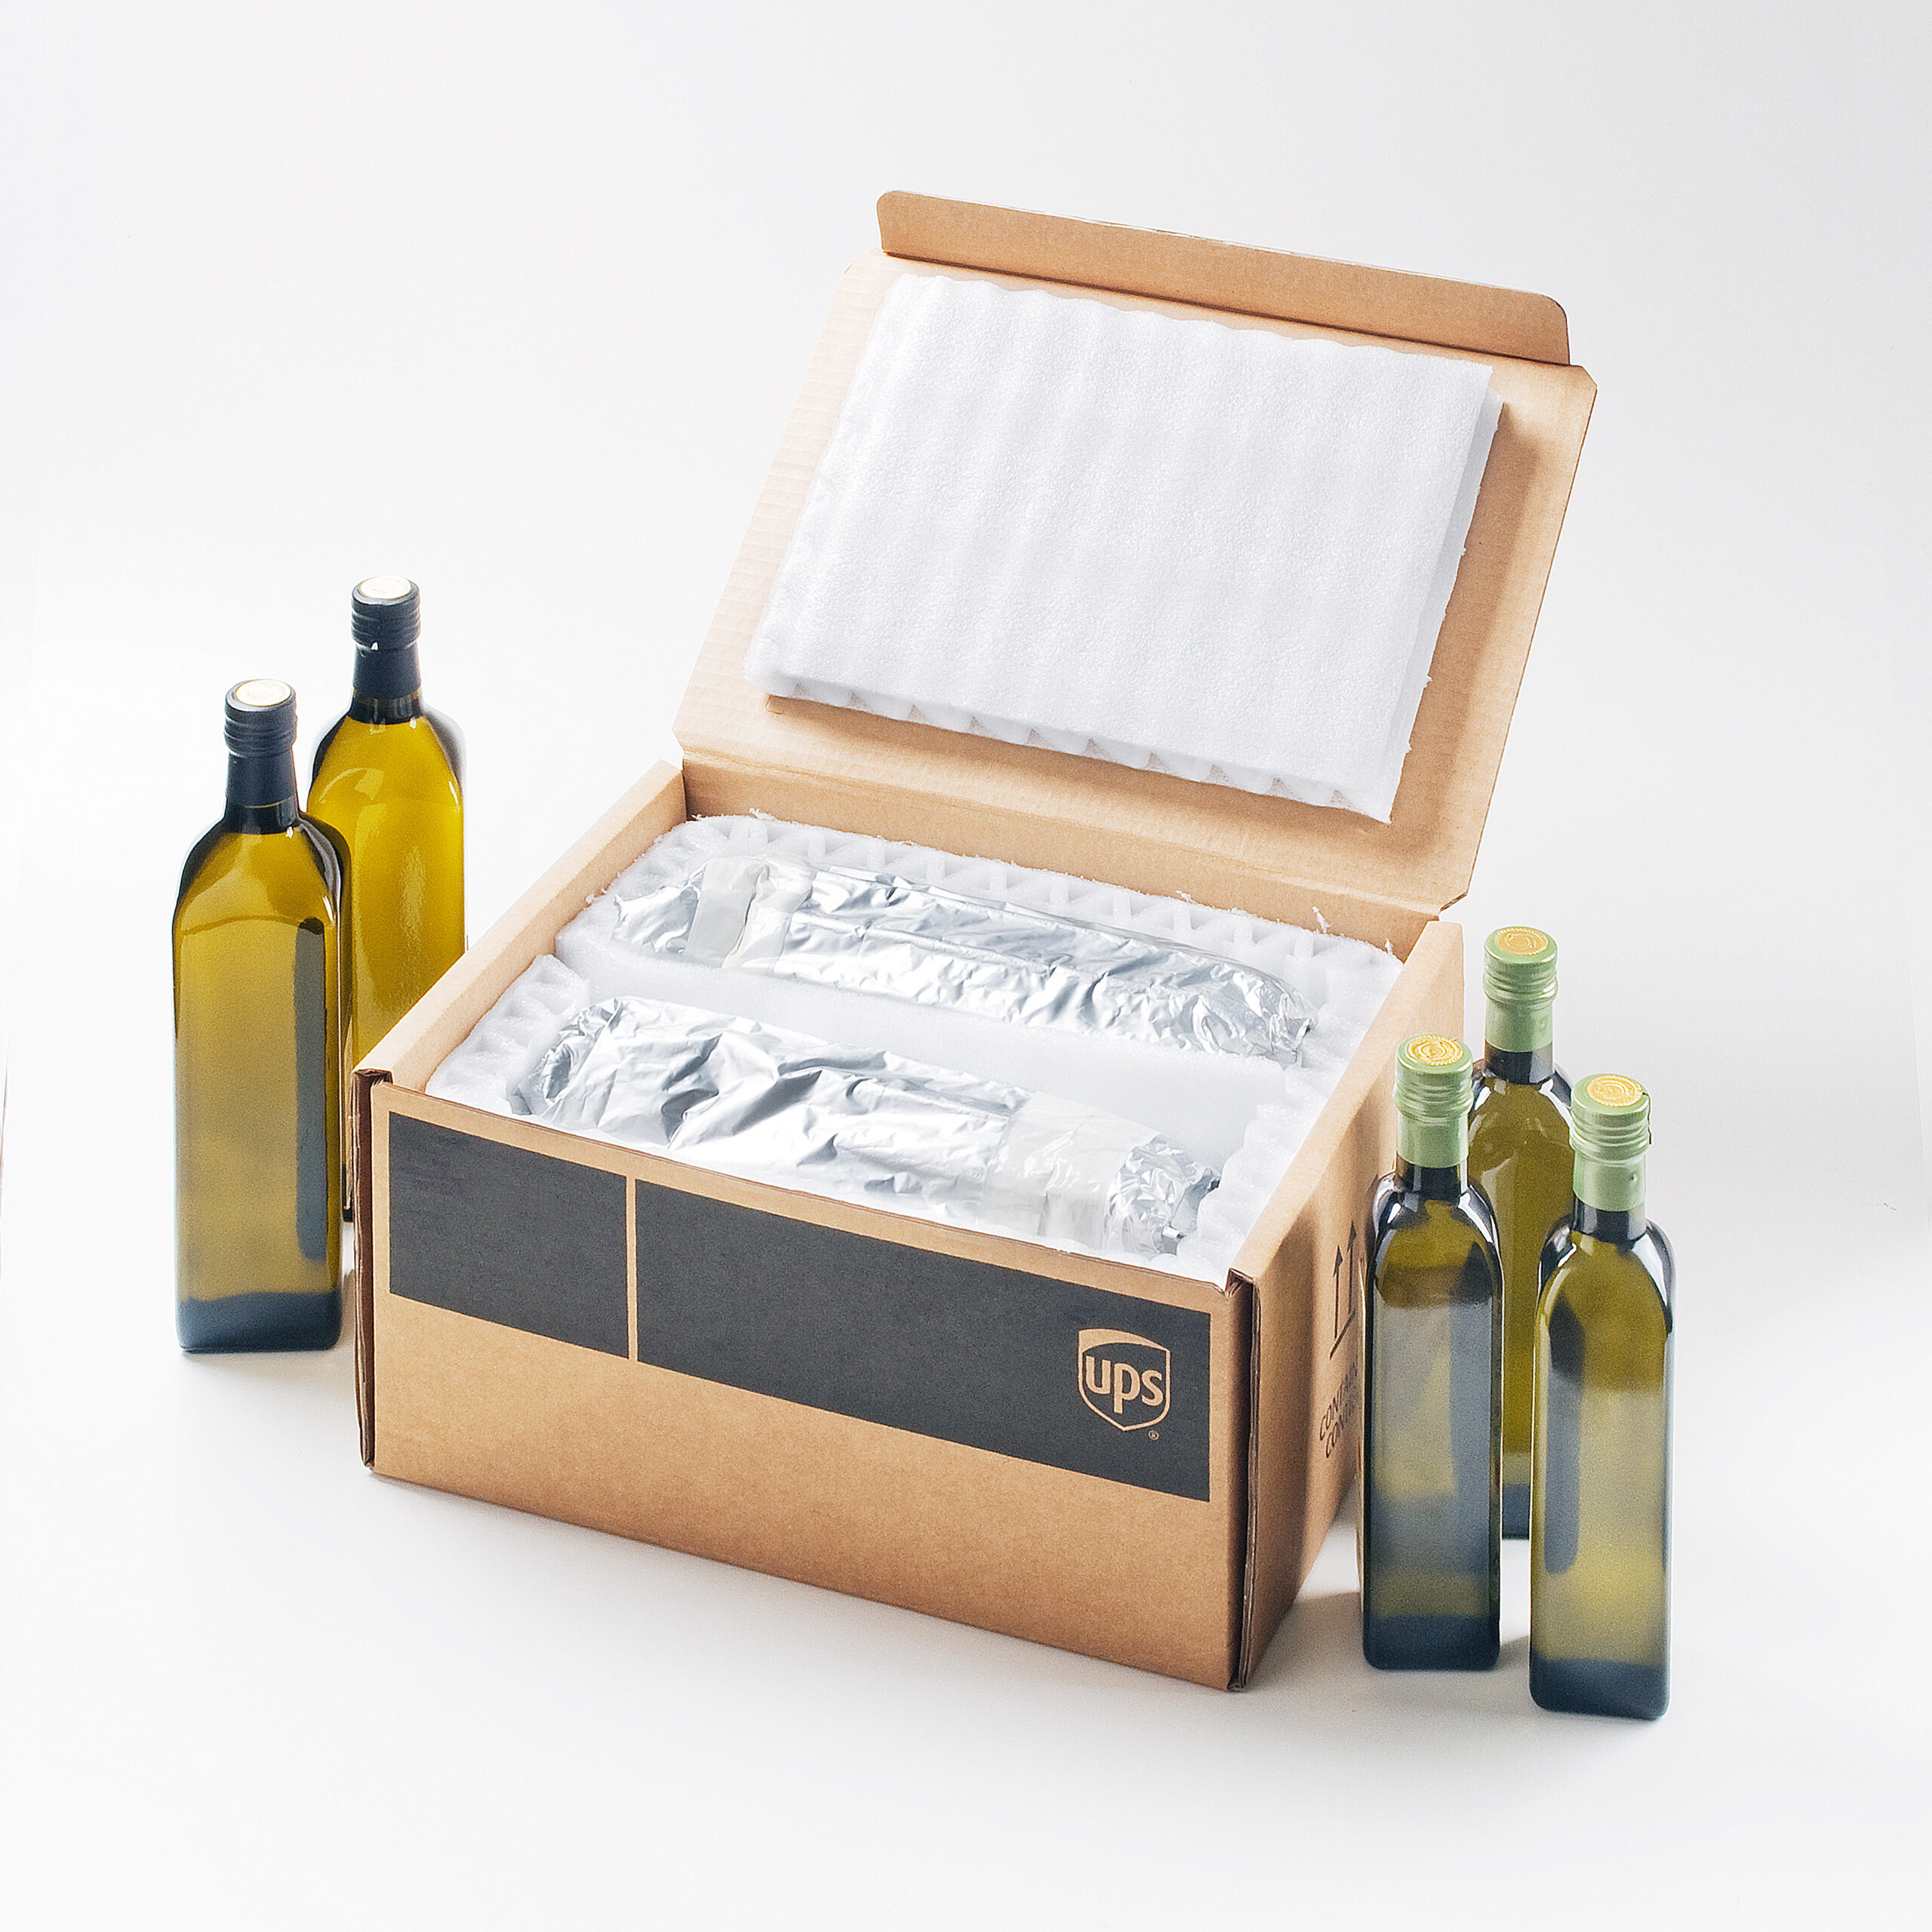 Presentato l’imballaggio che garantisce lunga vita agli oli da olive